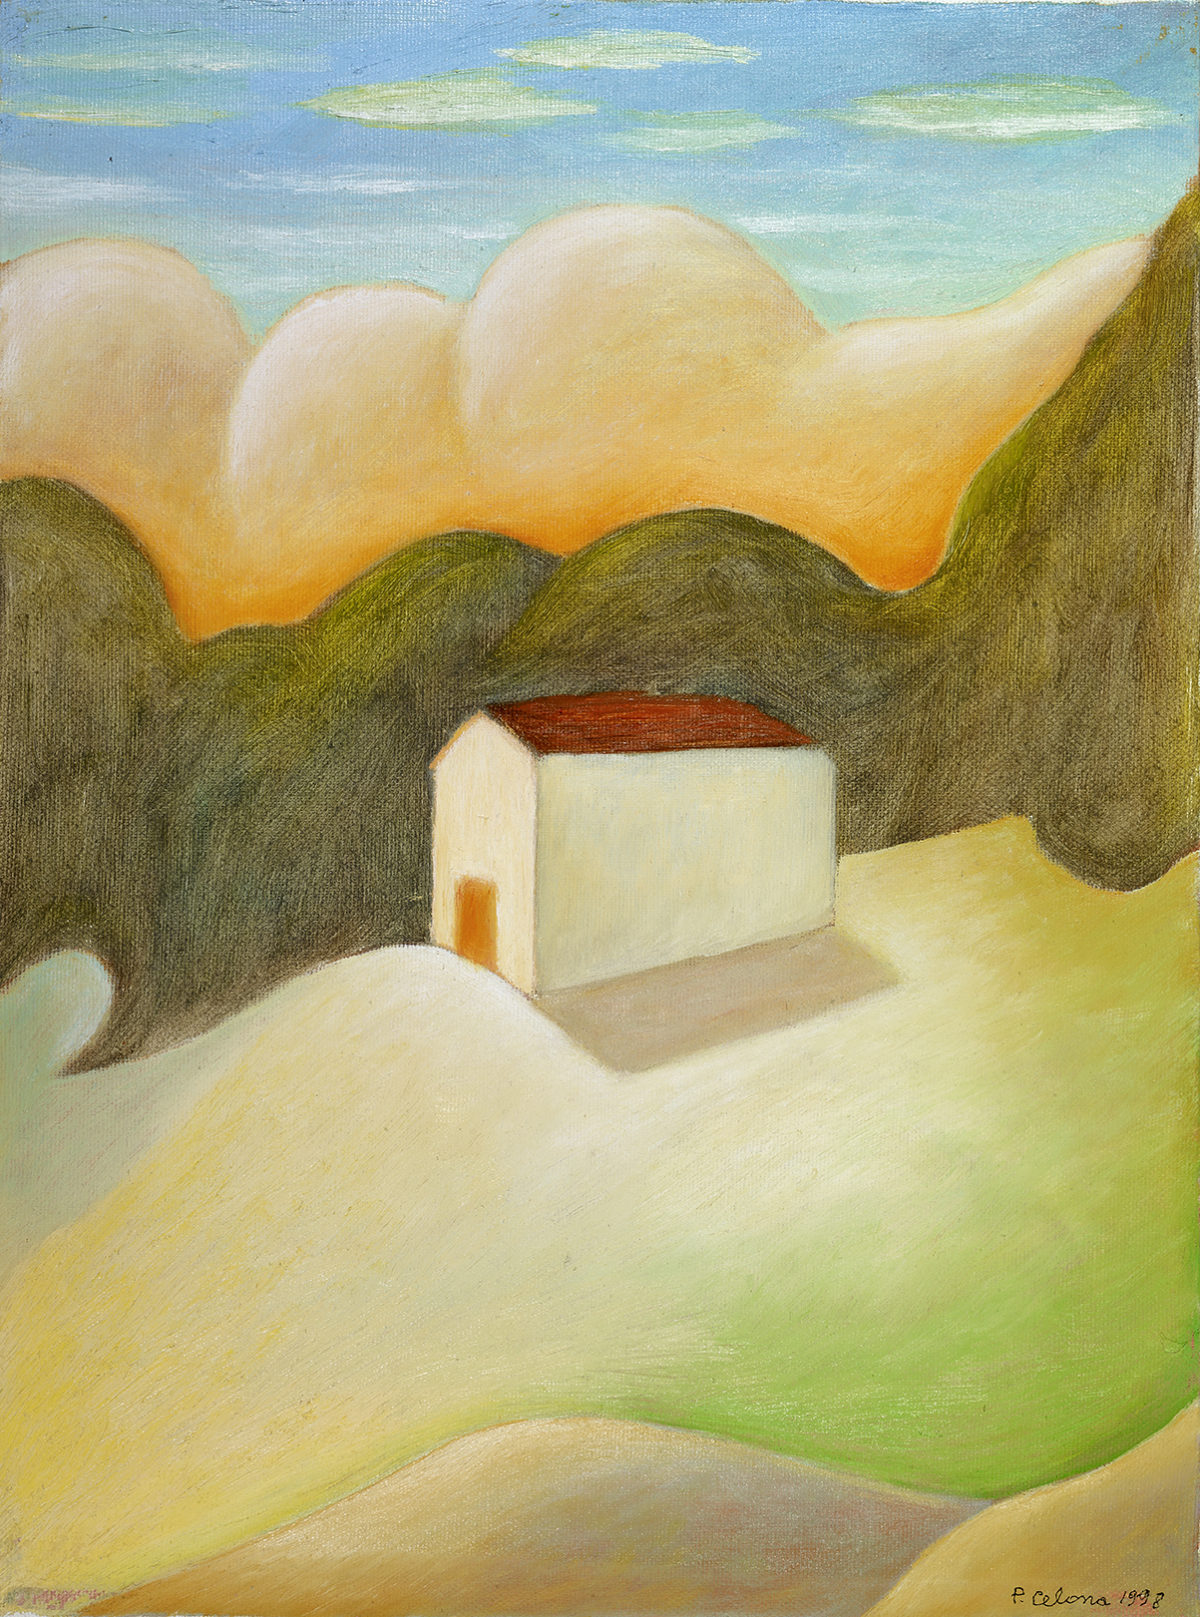 Casa sulla collina, 1998
Olio su tela
40 x 30 cm